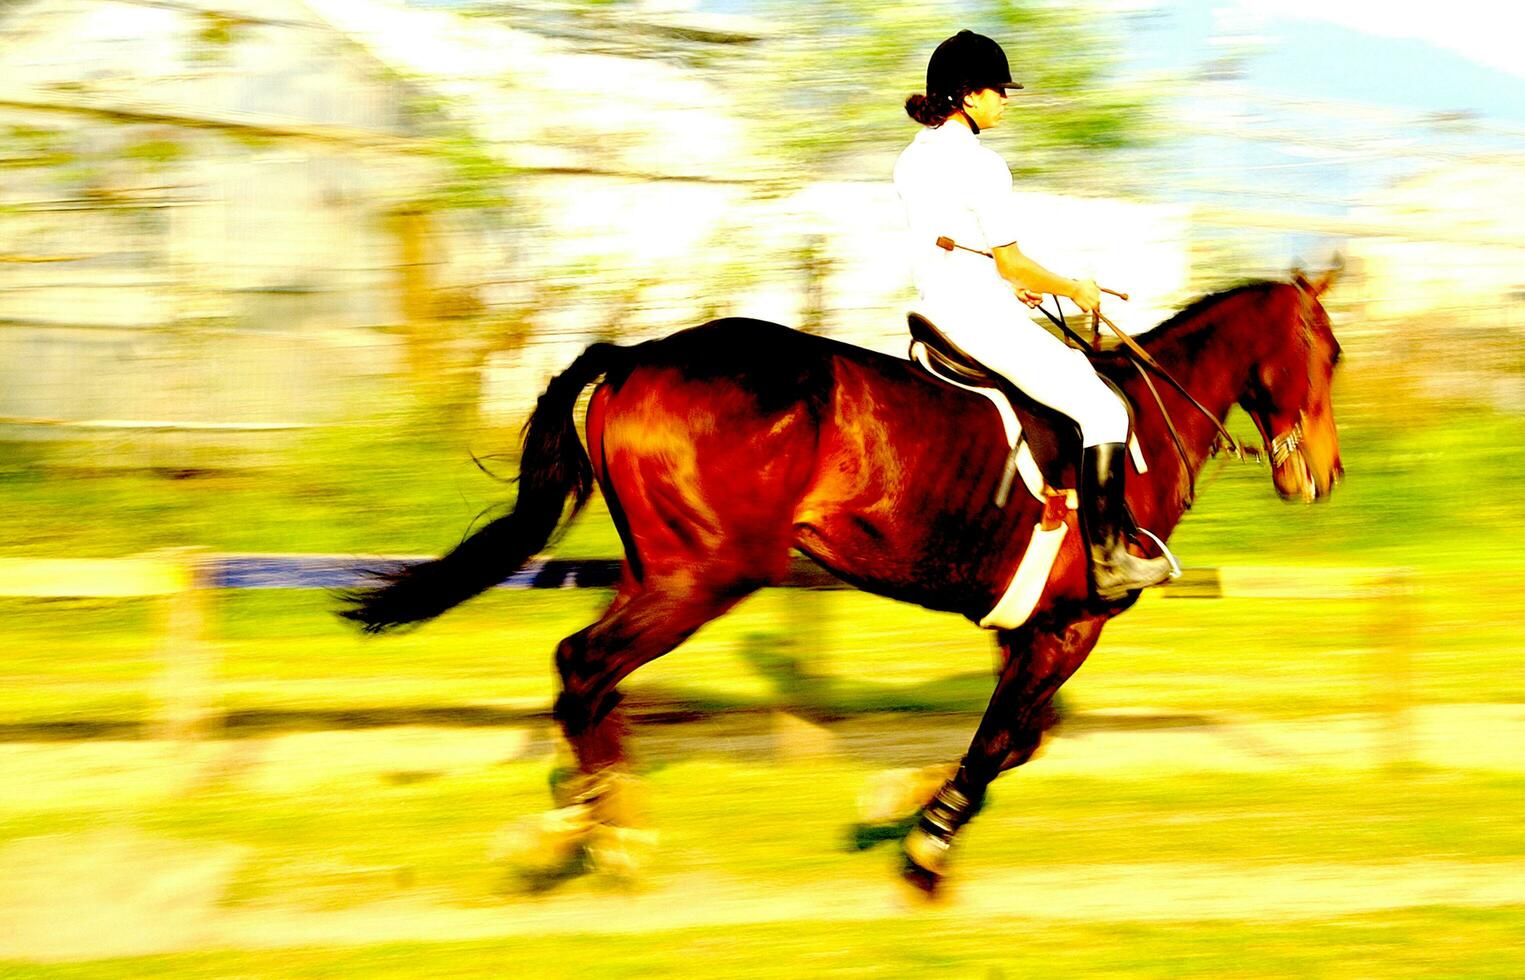 a person riding a horse photo